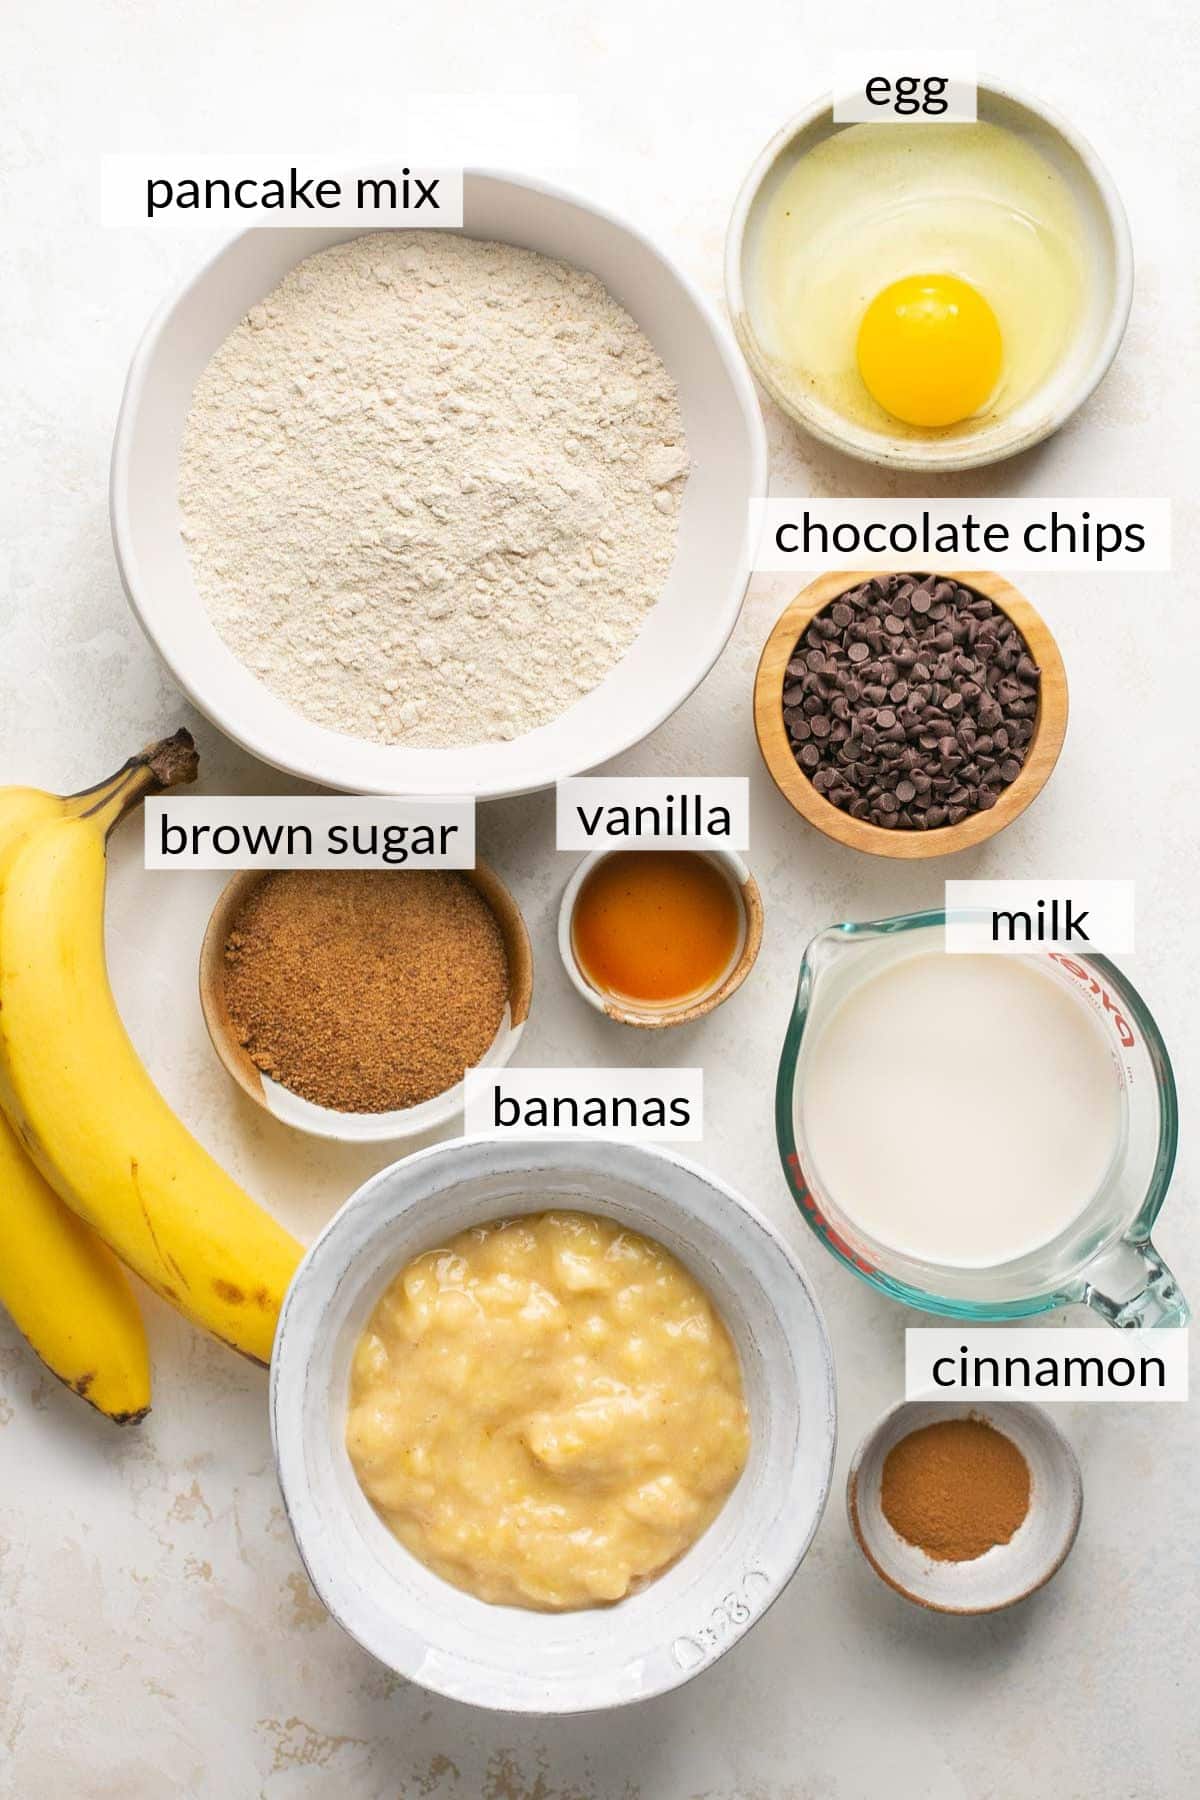 Mashed bananas, egg, milk, pancake mix, vanilla, sugar and cinnamon in small bowls.